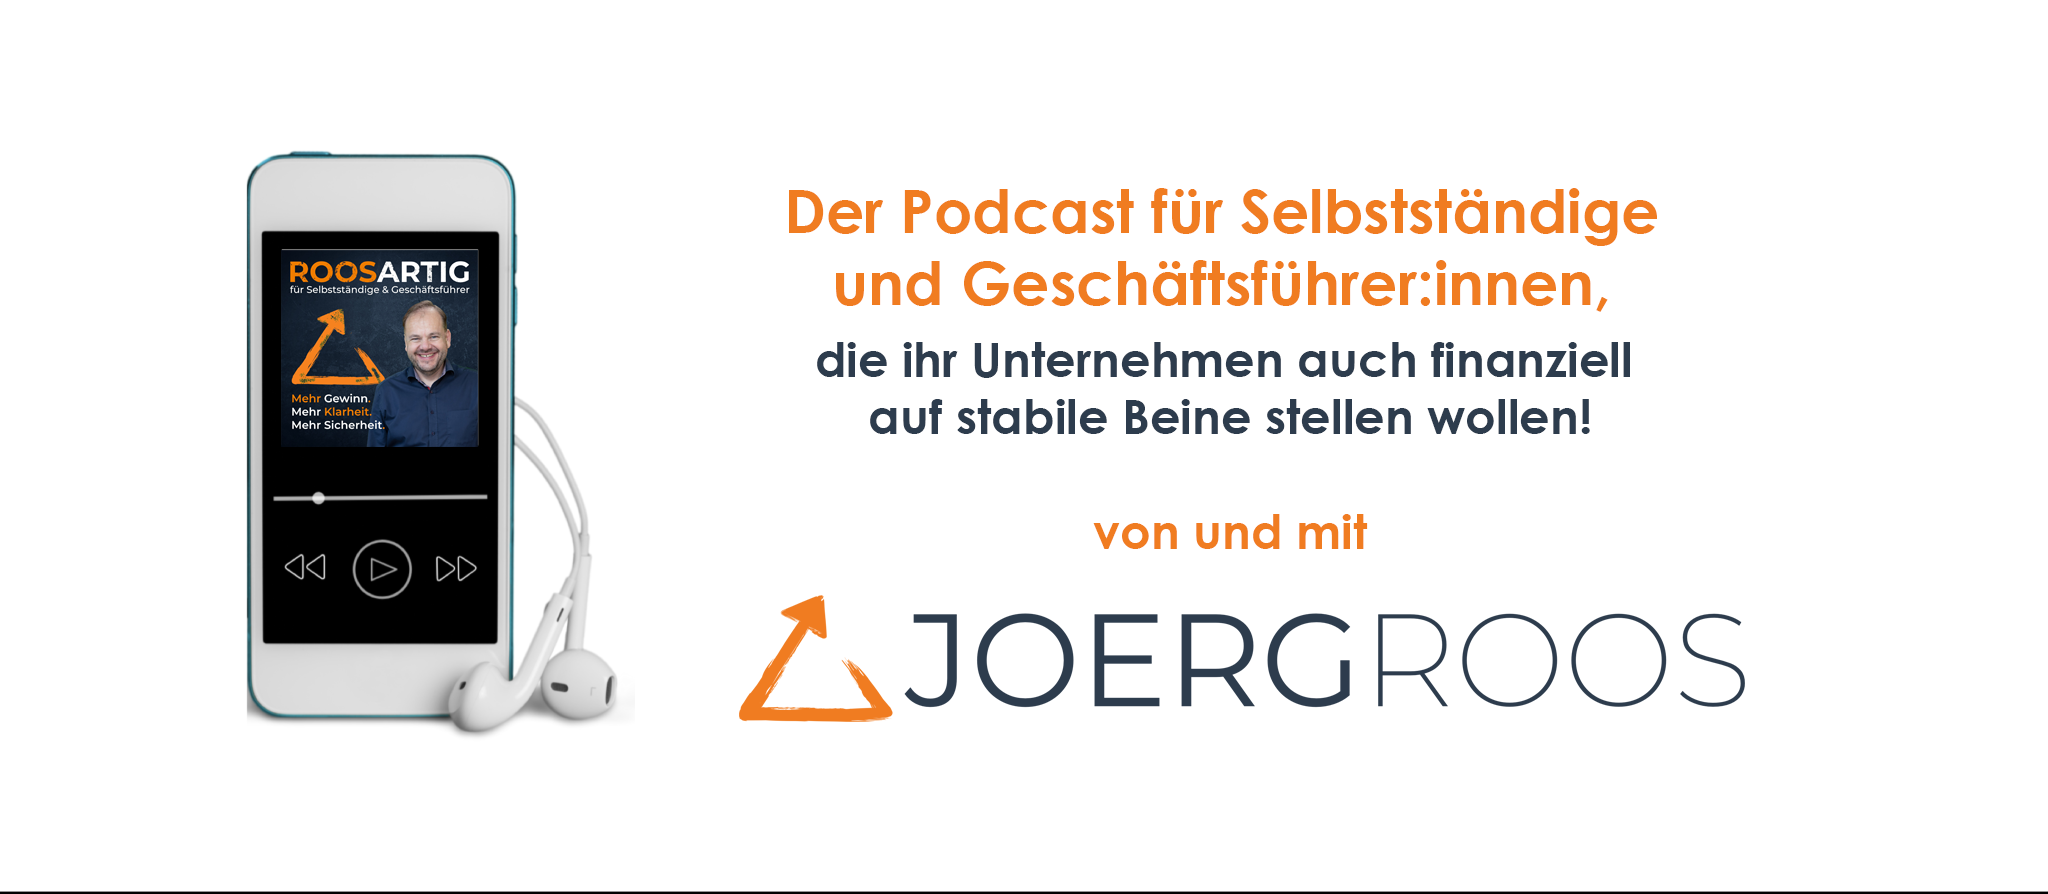 Roosartig der Podcast von und mit Joerg Roos